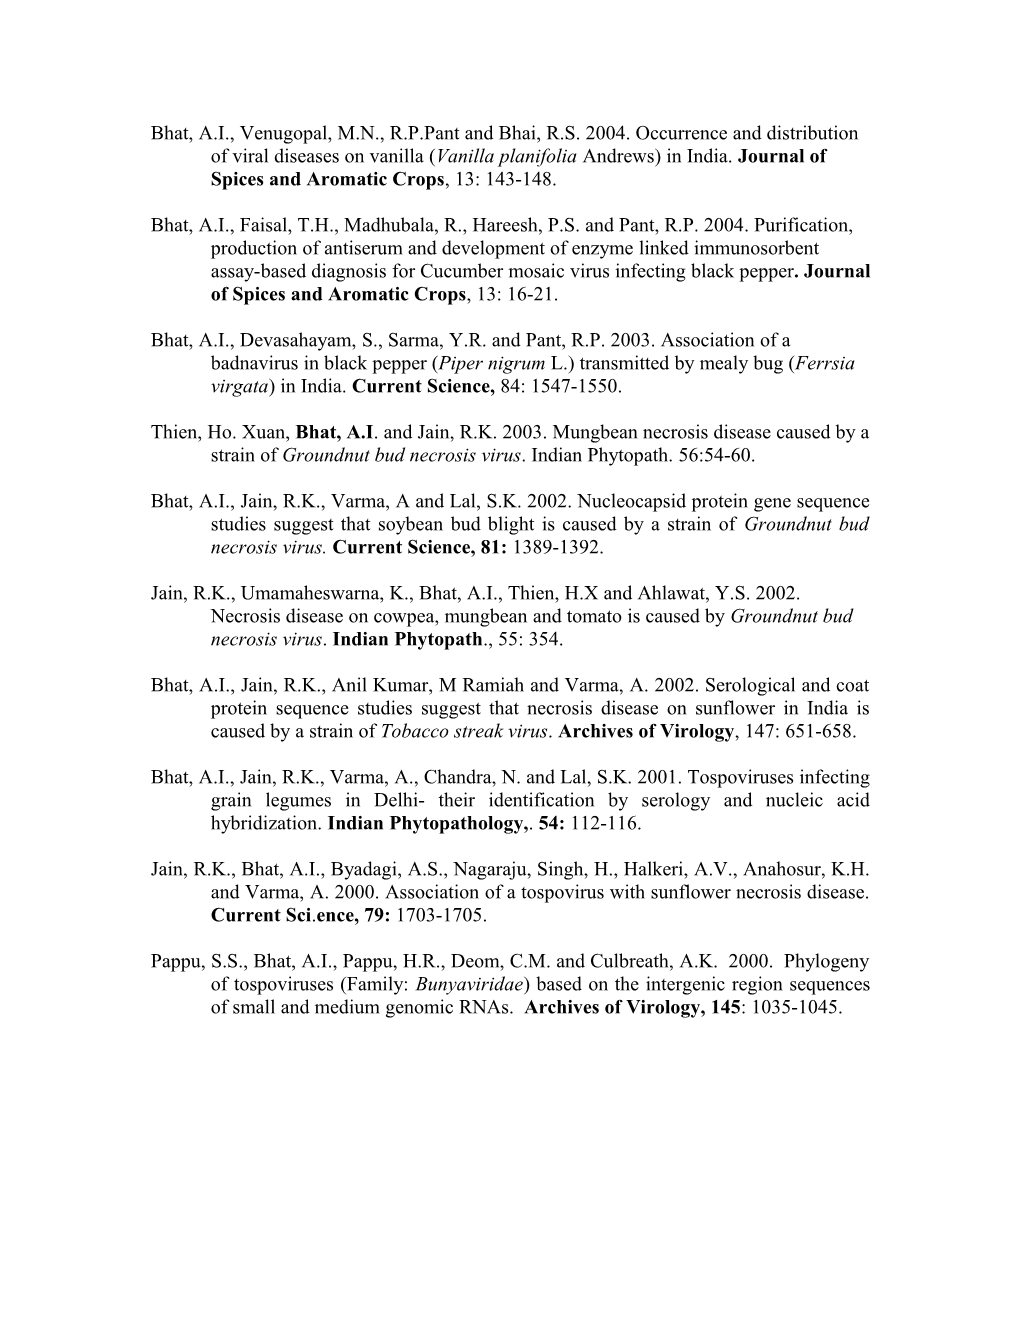 Bhat, A.I., Venugopal, M.N., R.P.Pant and Bhai, R.S. 2004. Occurrence and Distribution